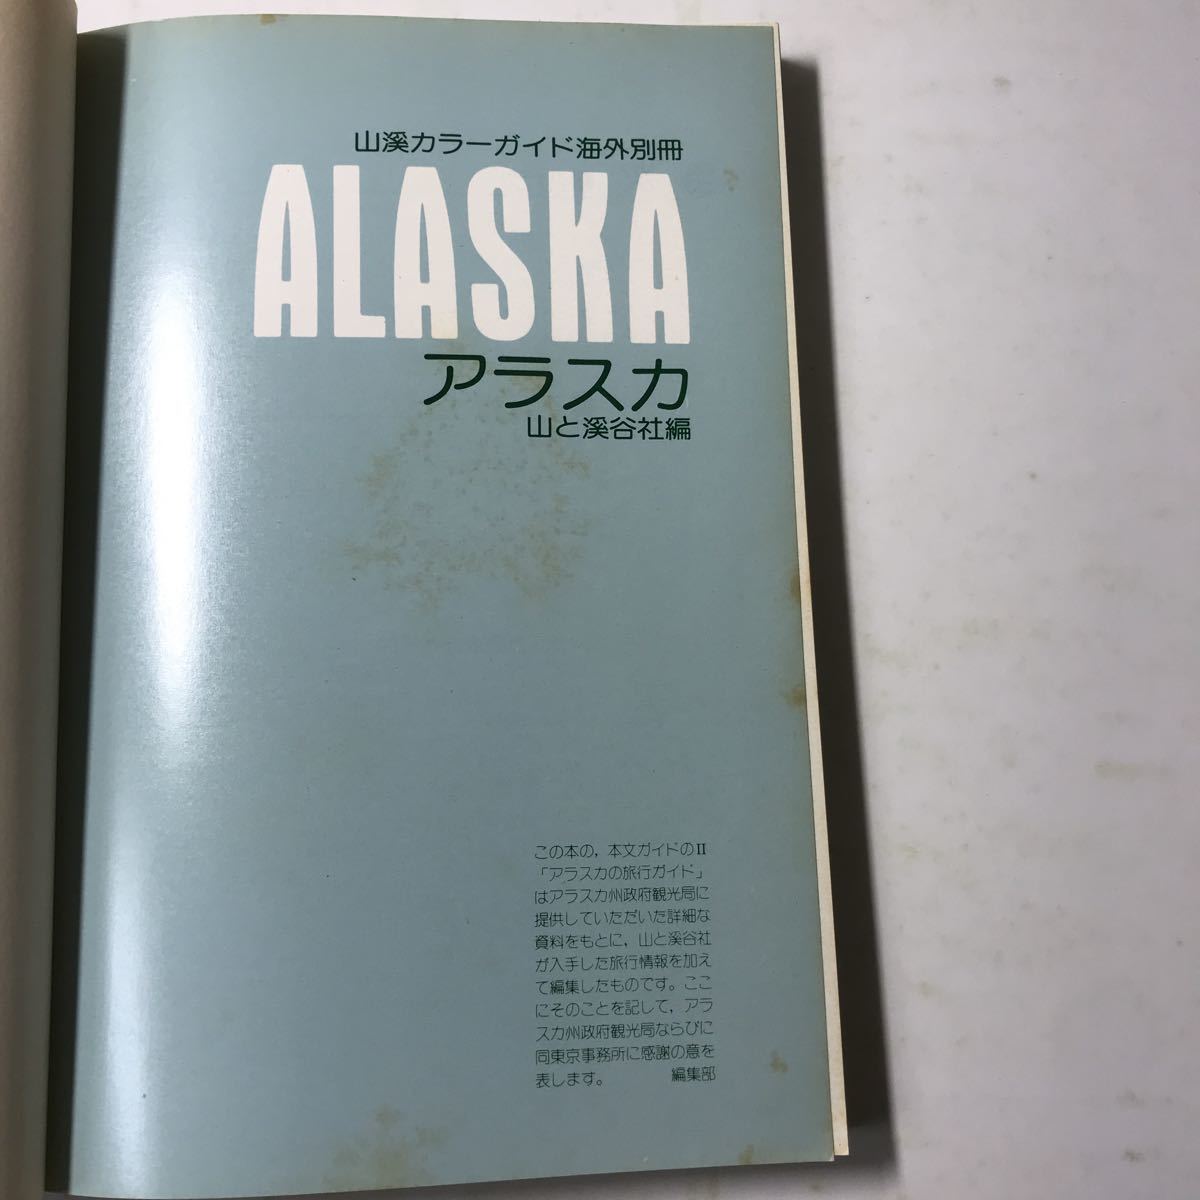 220706*L11* цвет Аляска гора ... фирма сборник гора . цвет гид за границей отдельный выпуск Showa 49 год первая версия 